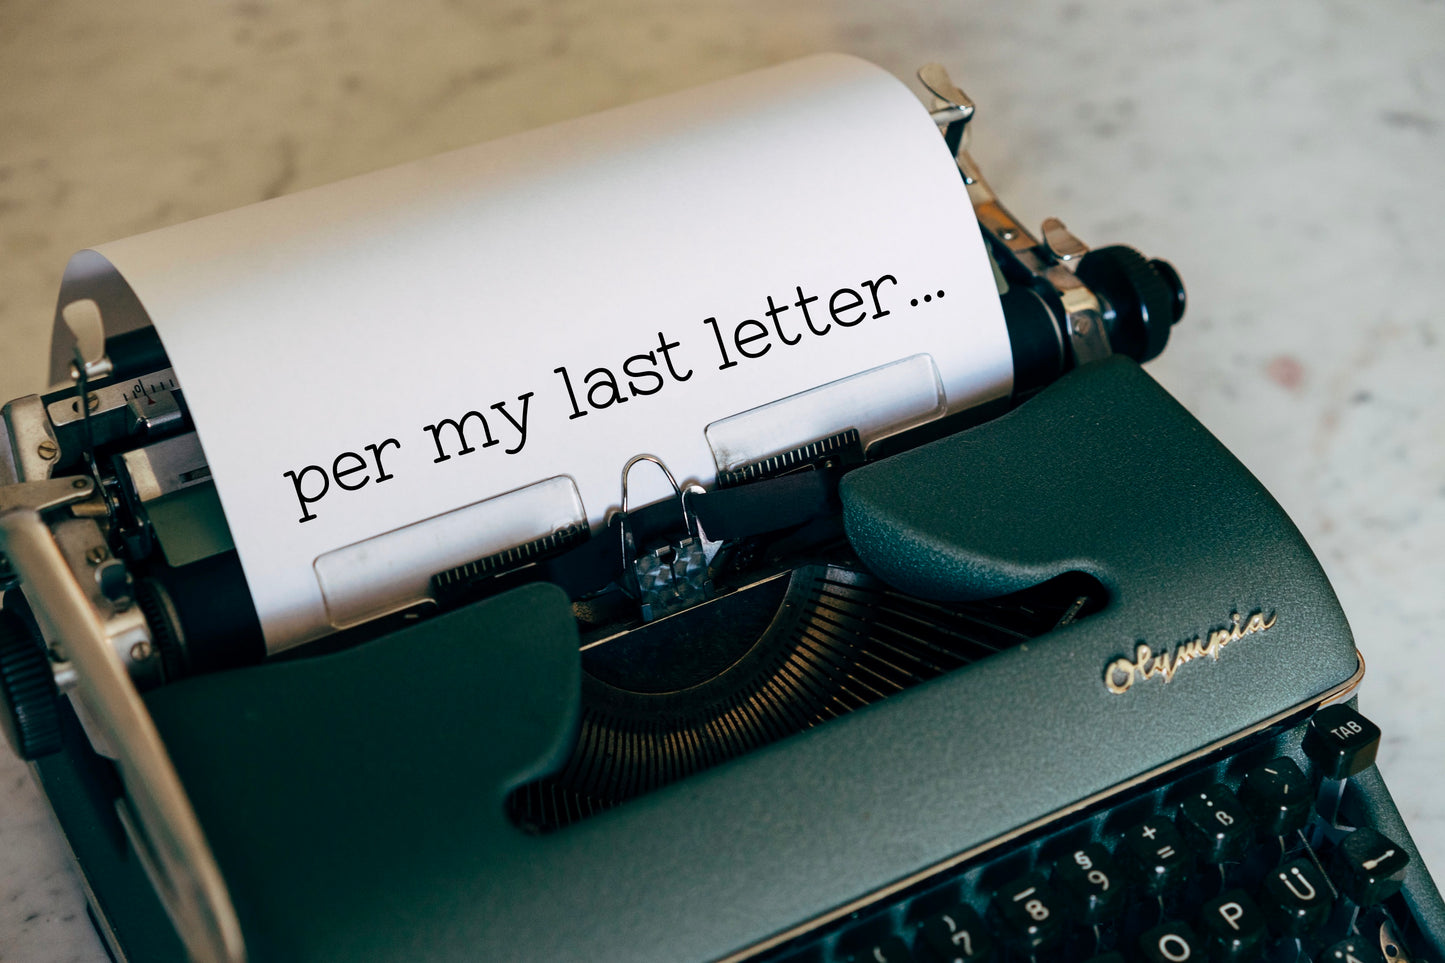 Vanilla Handwritten Typewriter Font